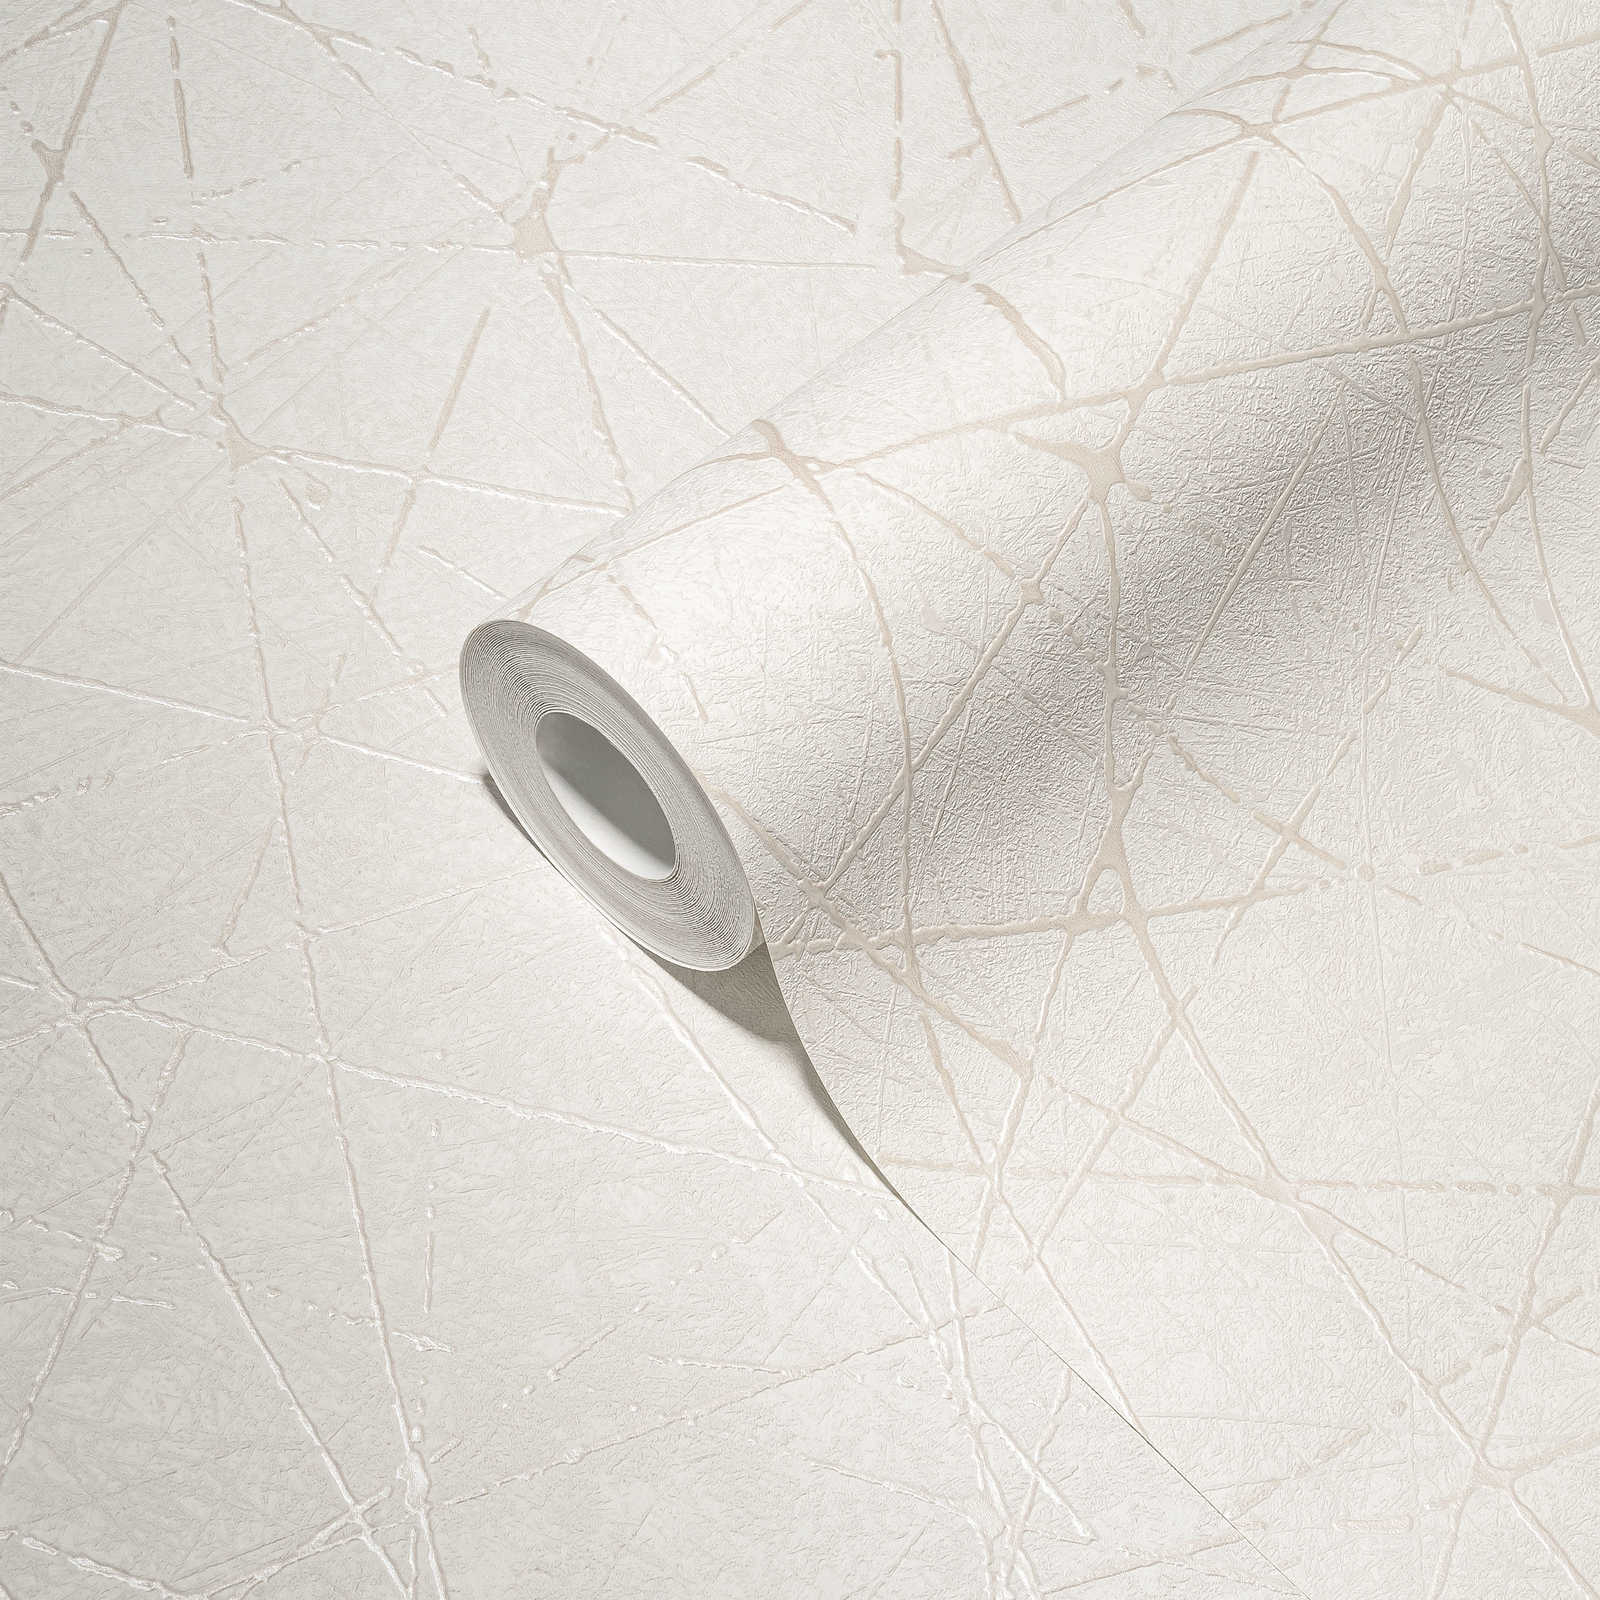             Non-woven wallpaper with graphic line pattern - white, cream, silver
        